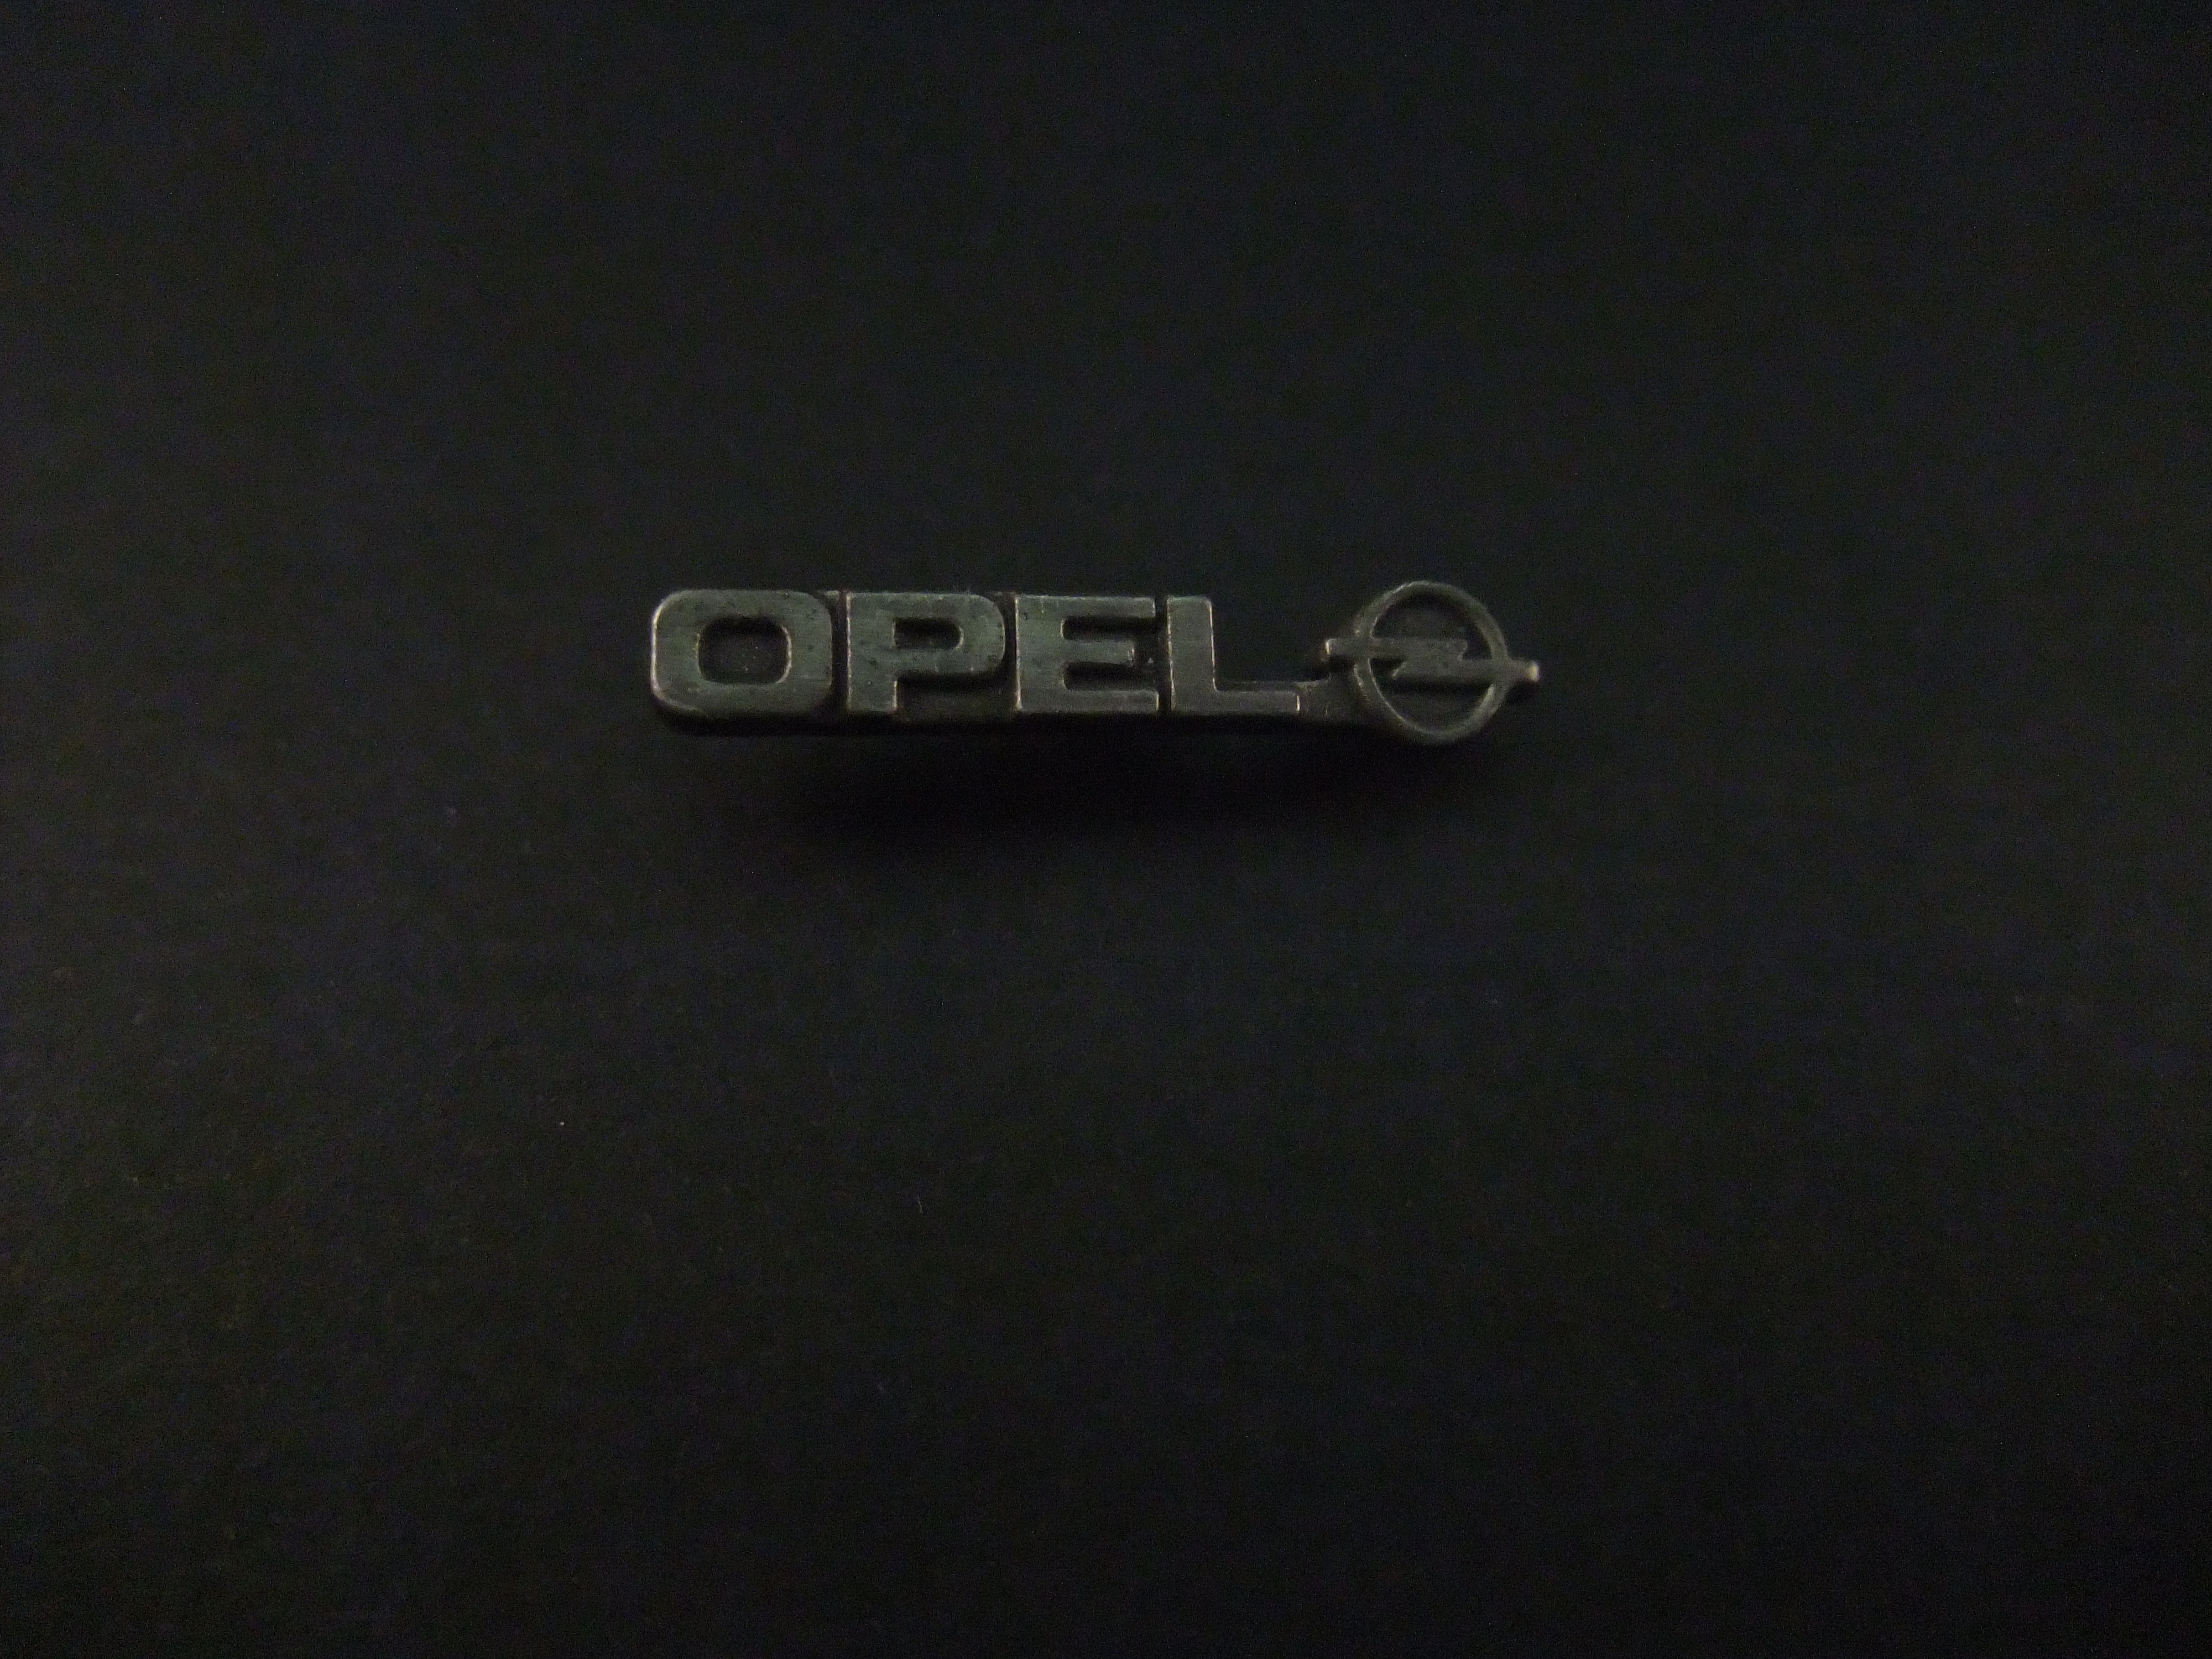 Opel zilverkleurig logo